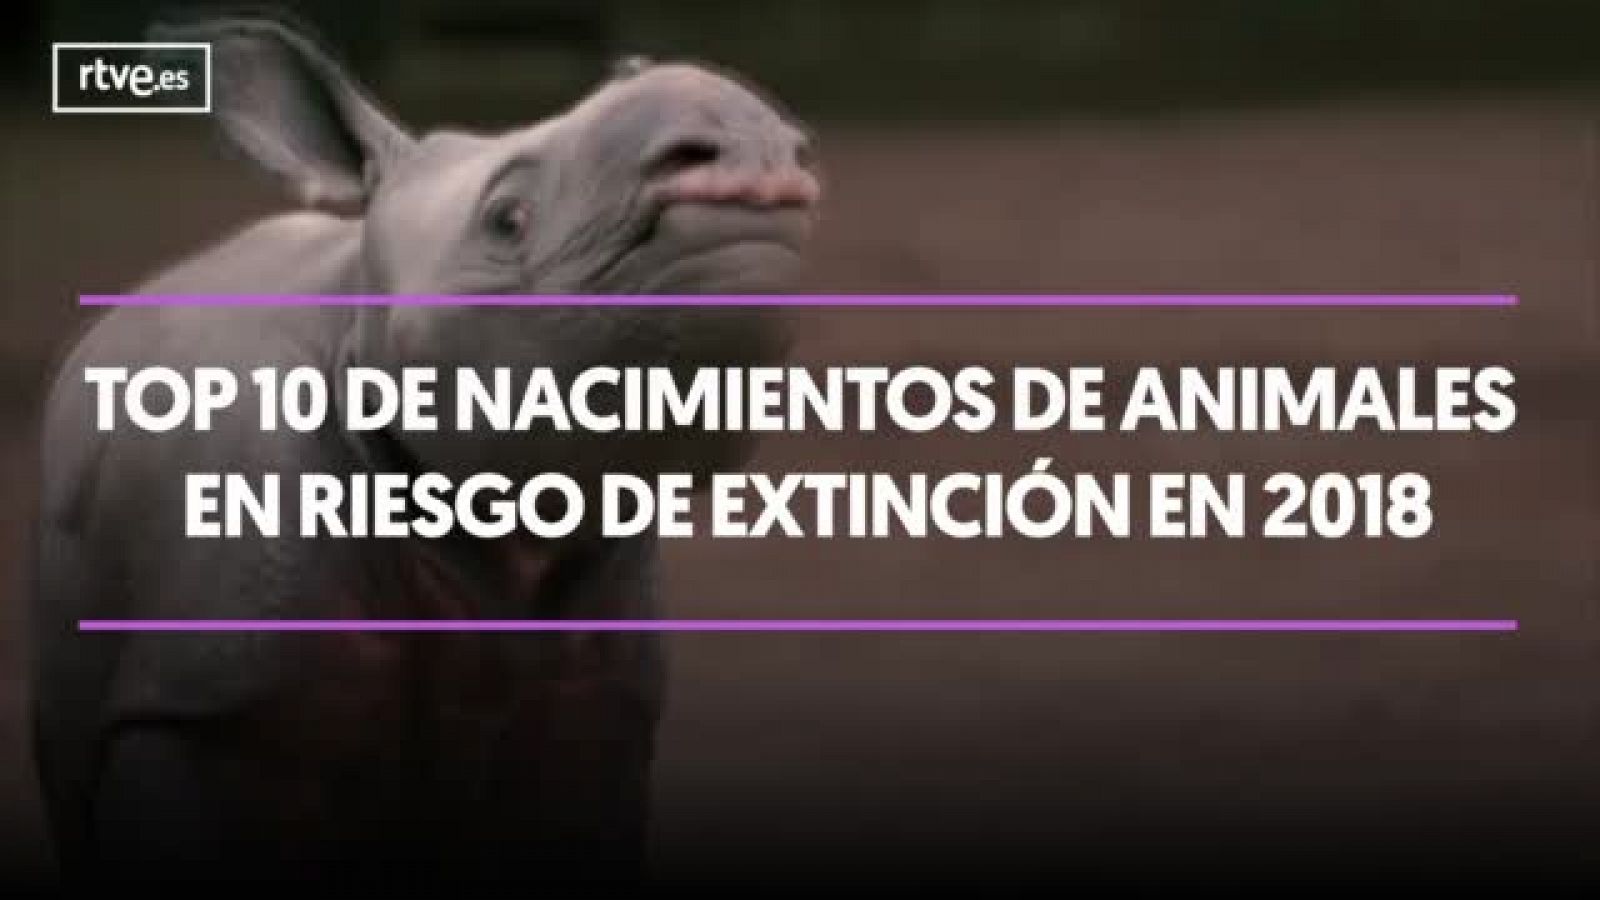 TOP 10 nacimientos de animales en peligro de extinción 